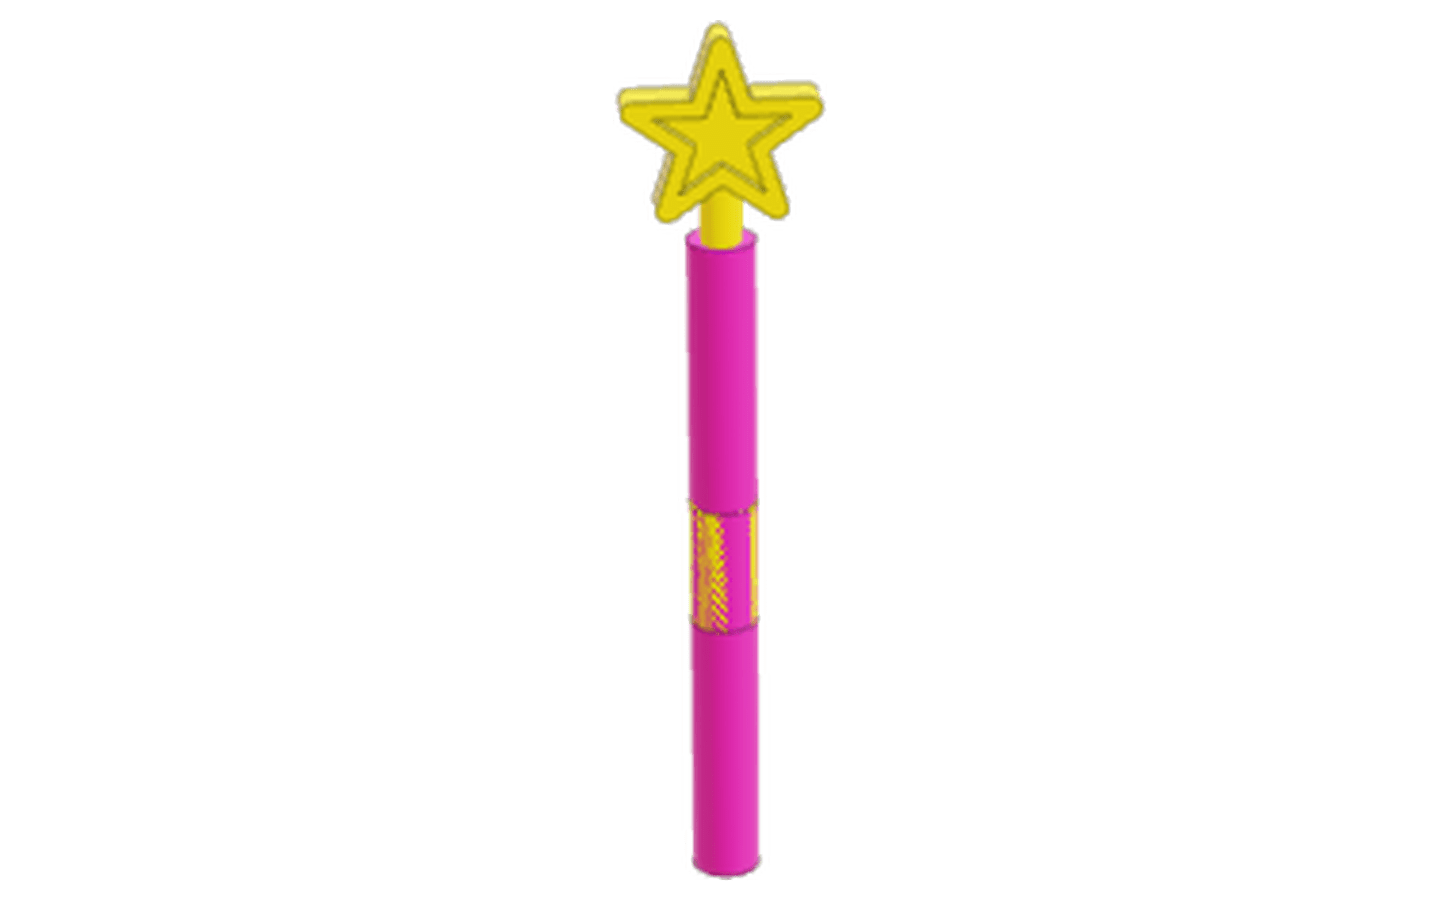 Mecabricks.com. Fortnite Star wand pickaxe